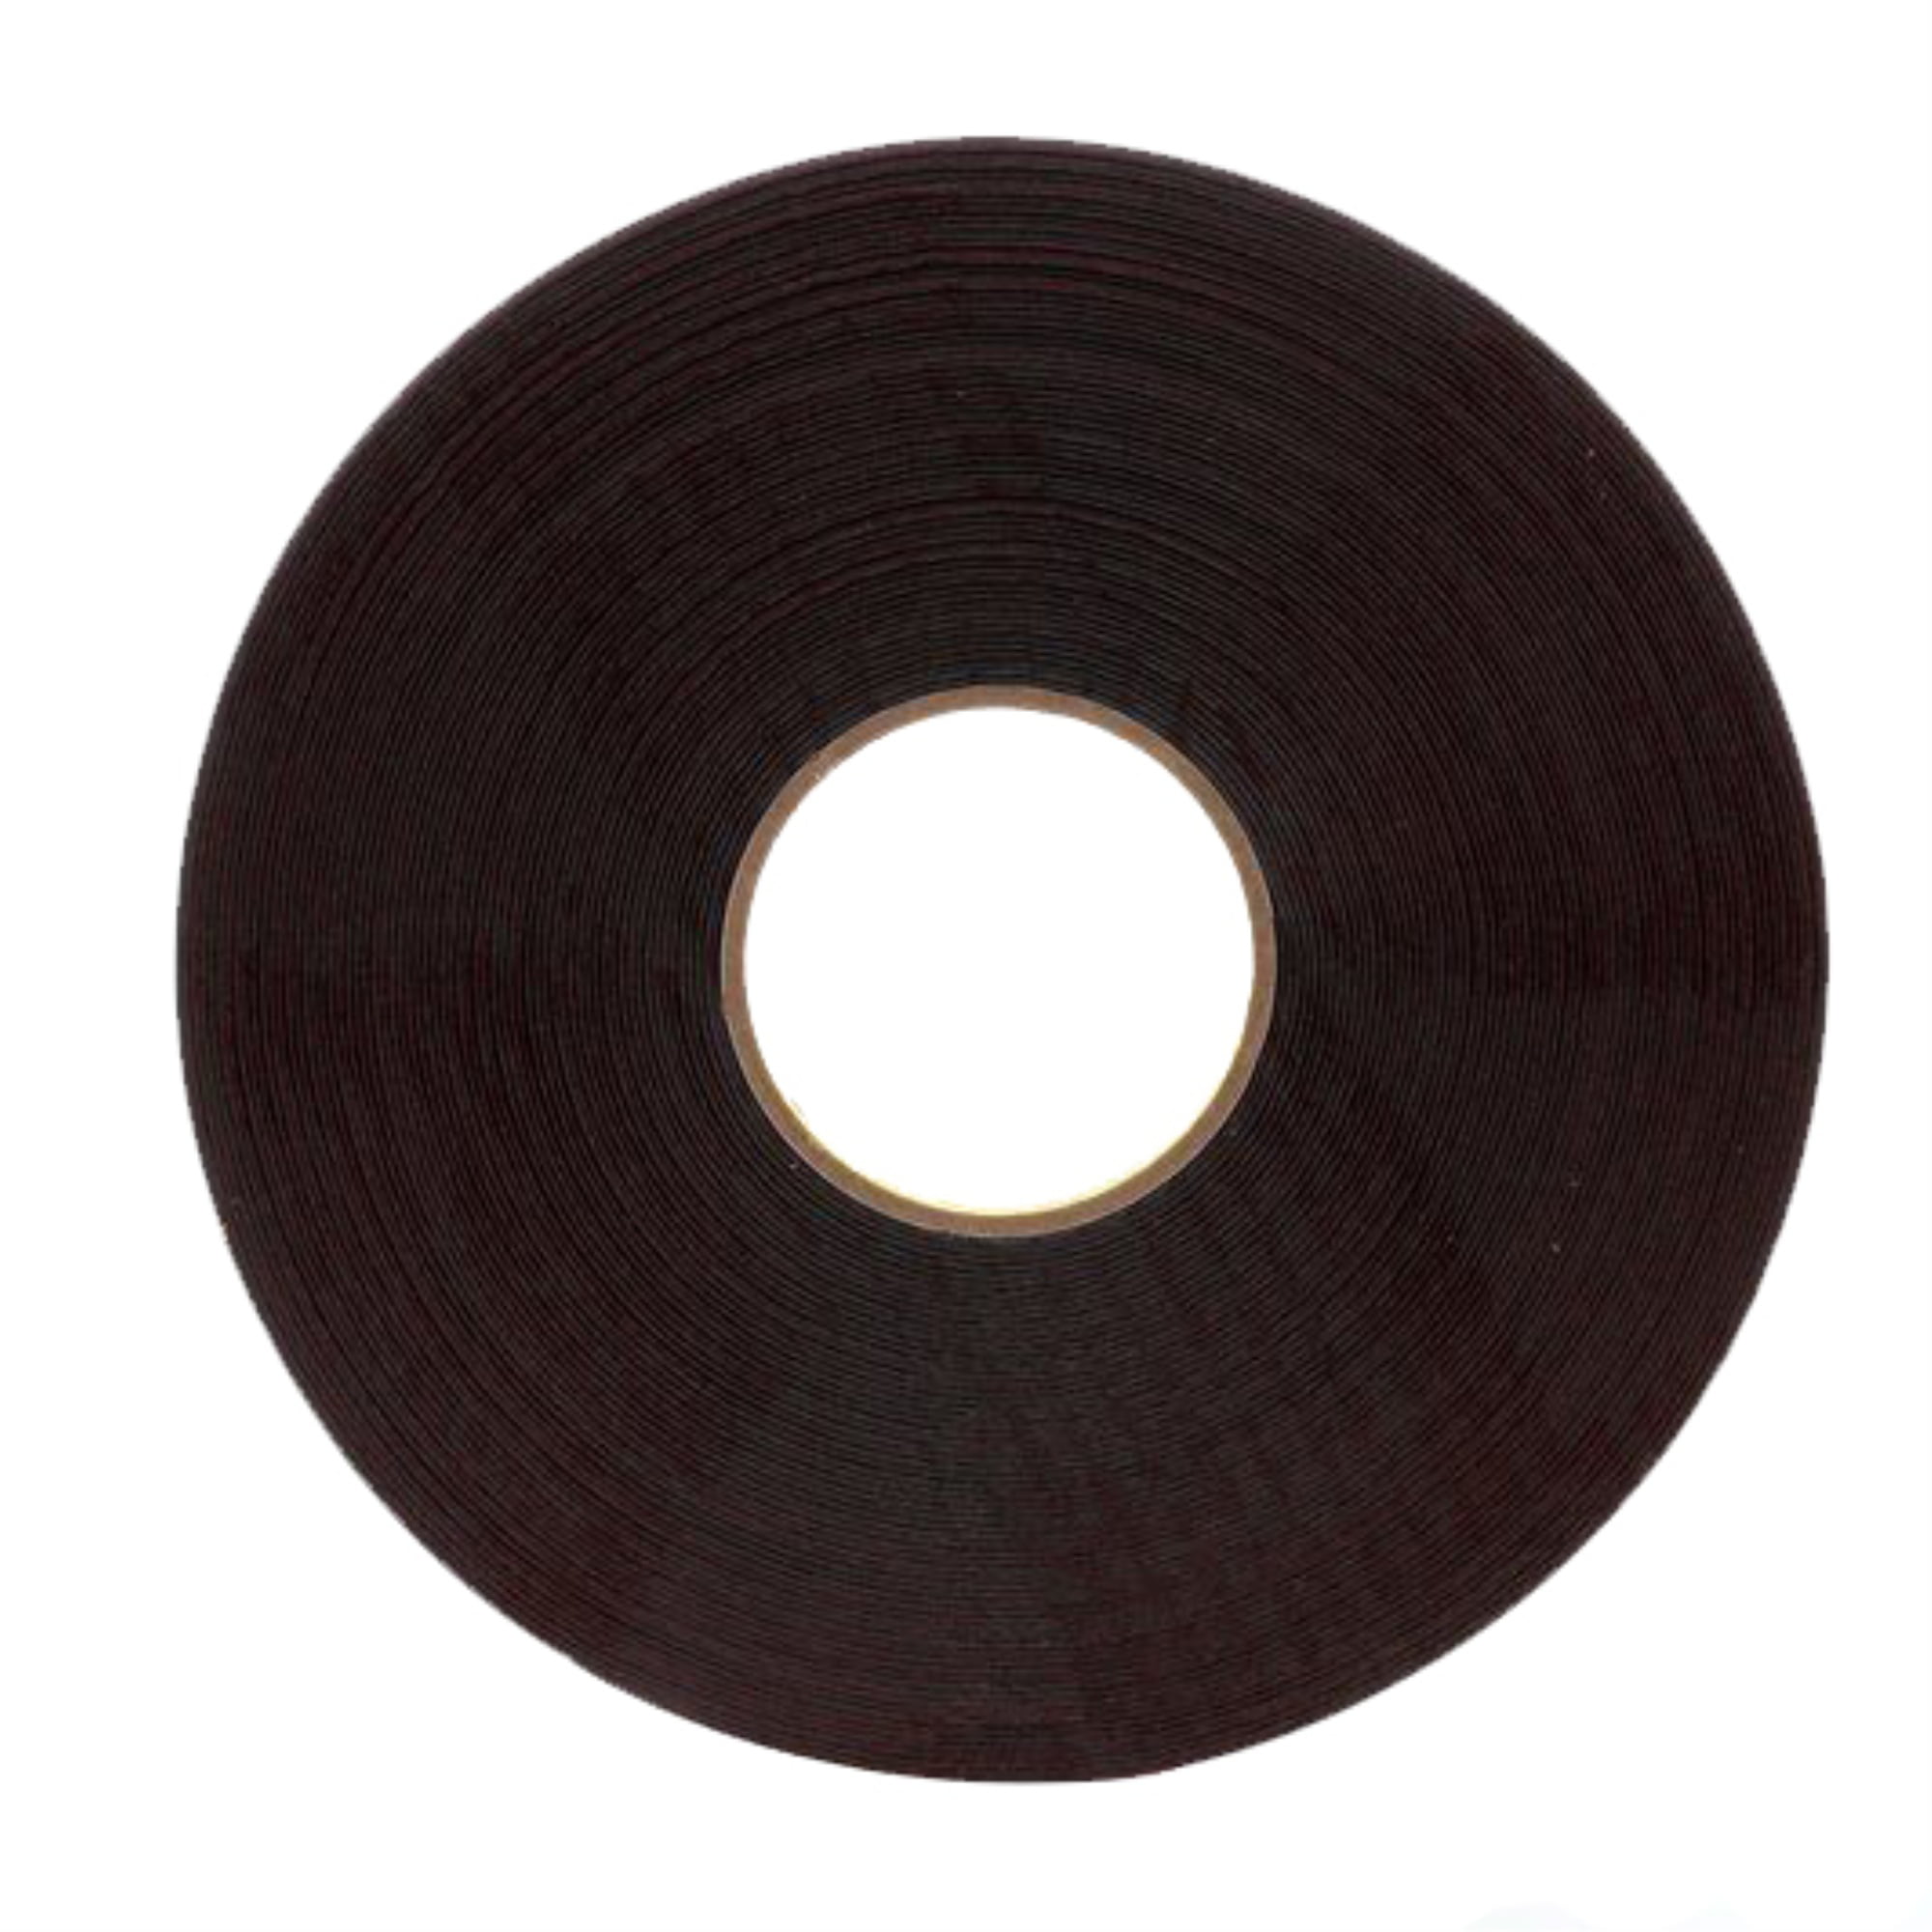 Vinyl Electrical Tape 3M Scotch 1 in x 36 yds Super 33 